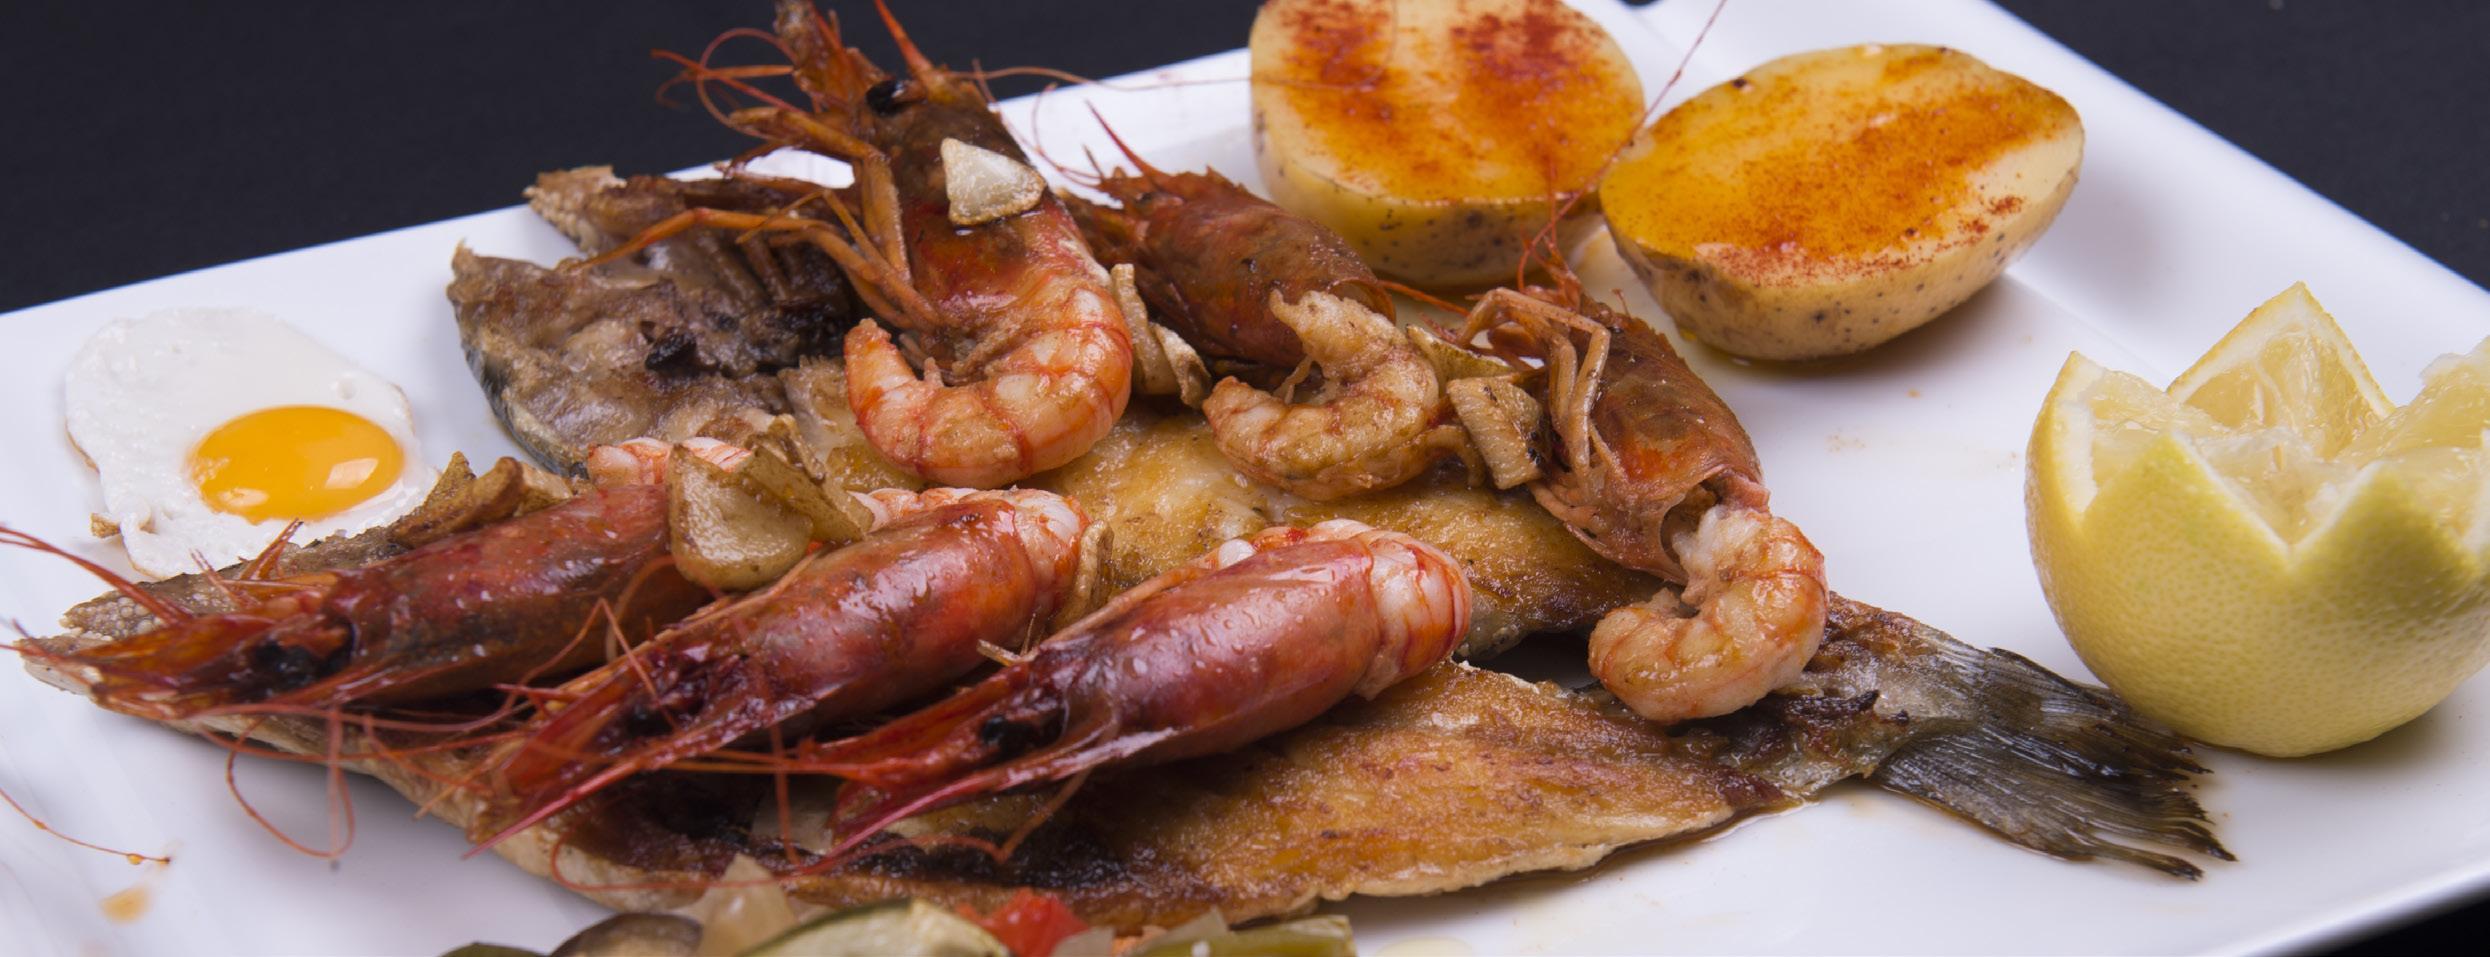 Pescados y mariscos en el Restaurante La Rana de Benidorm